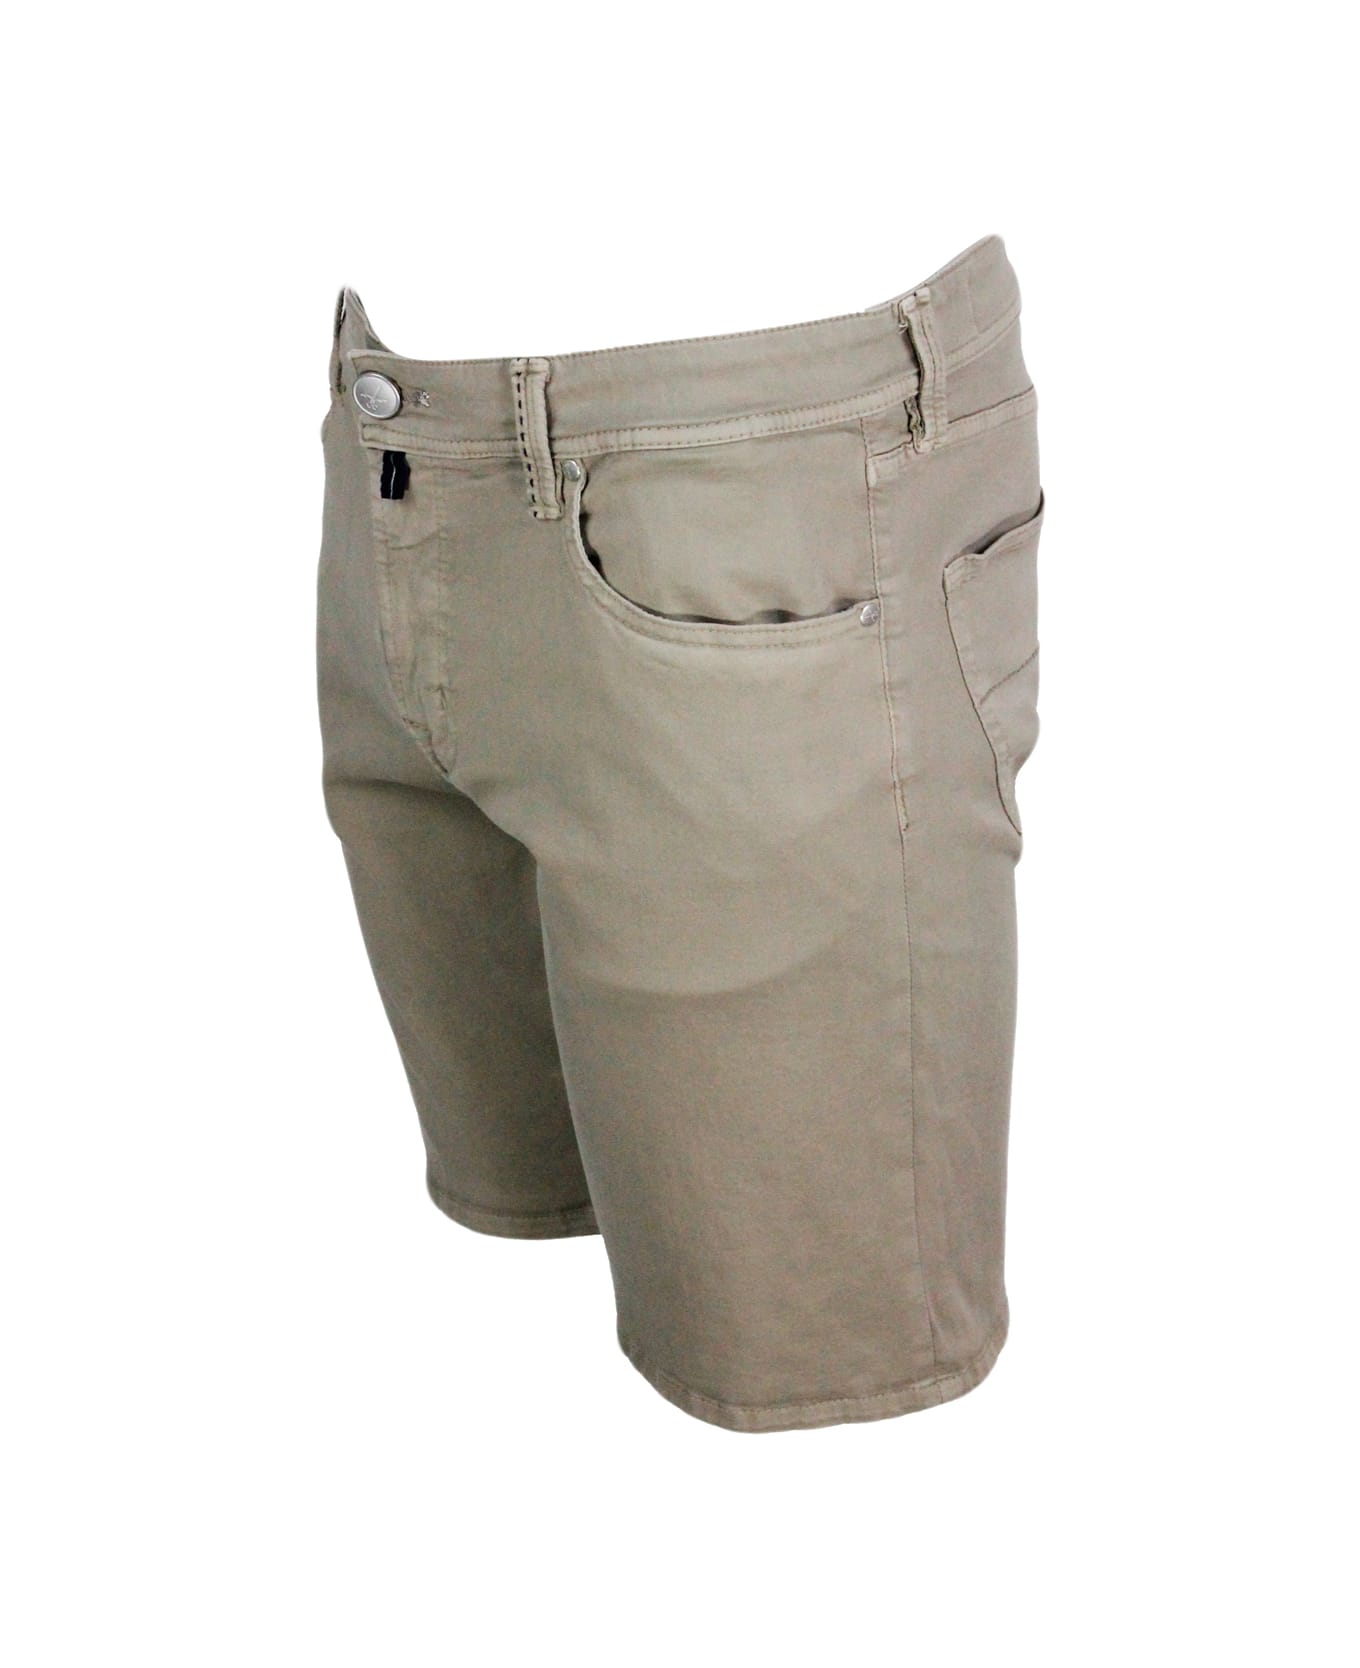 Sartoria Tramarossa Ascanio Slim Bermuda Shorts In Super Stretch Cotton Gabardine With 5 Pockets And Tailored Stitching - Sand Beige